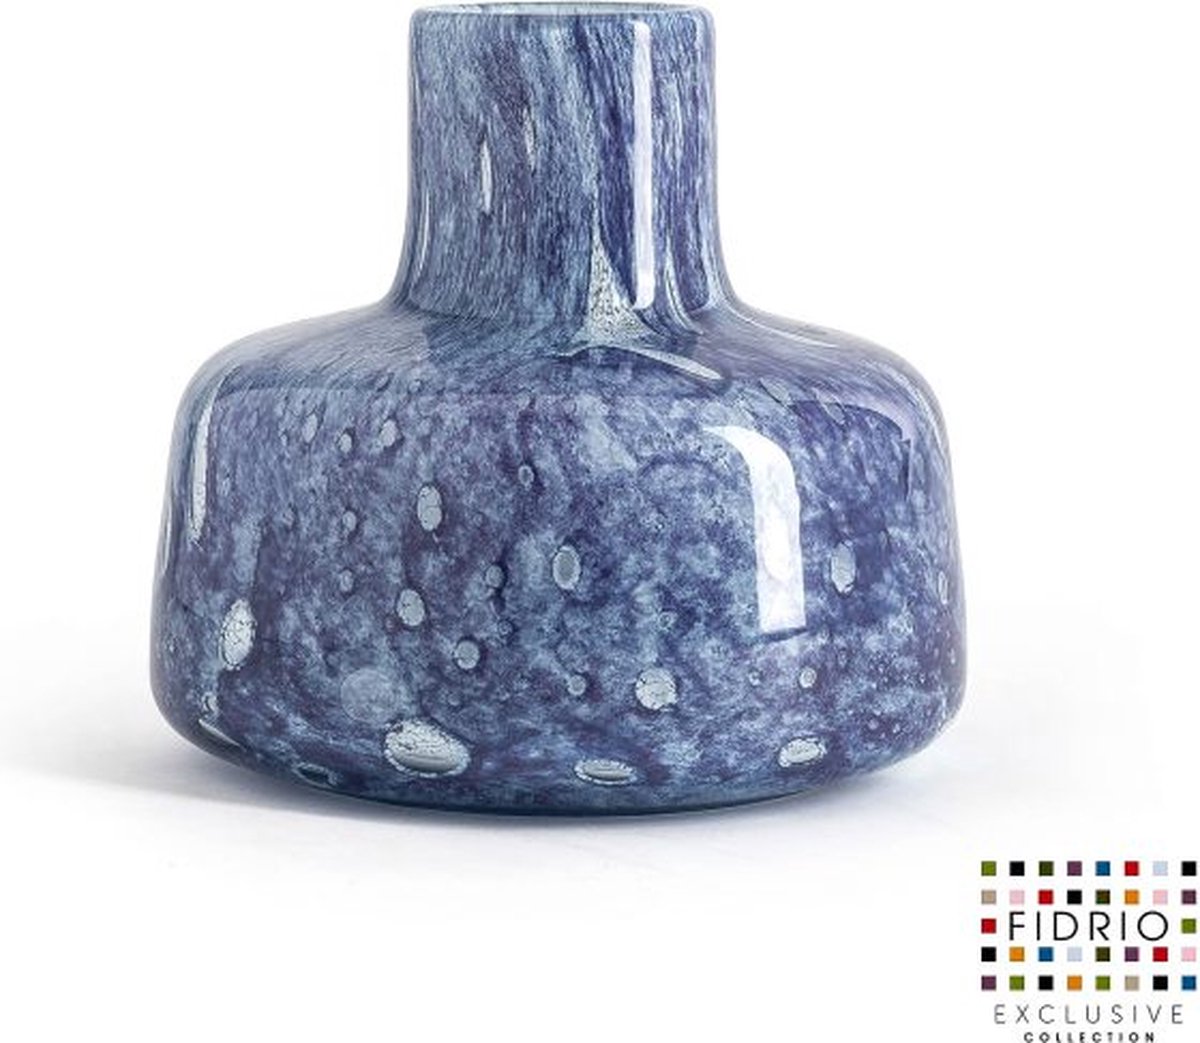 Fidrio Design Vaas Utopia PURPLE BLUE glas mondgeblazen bloemenvaas diameter 8 cm hoogte 21 cm